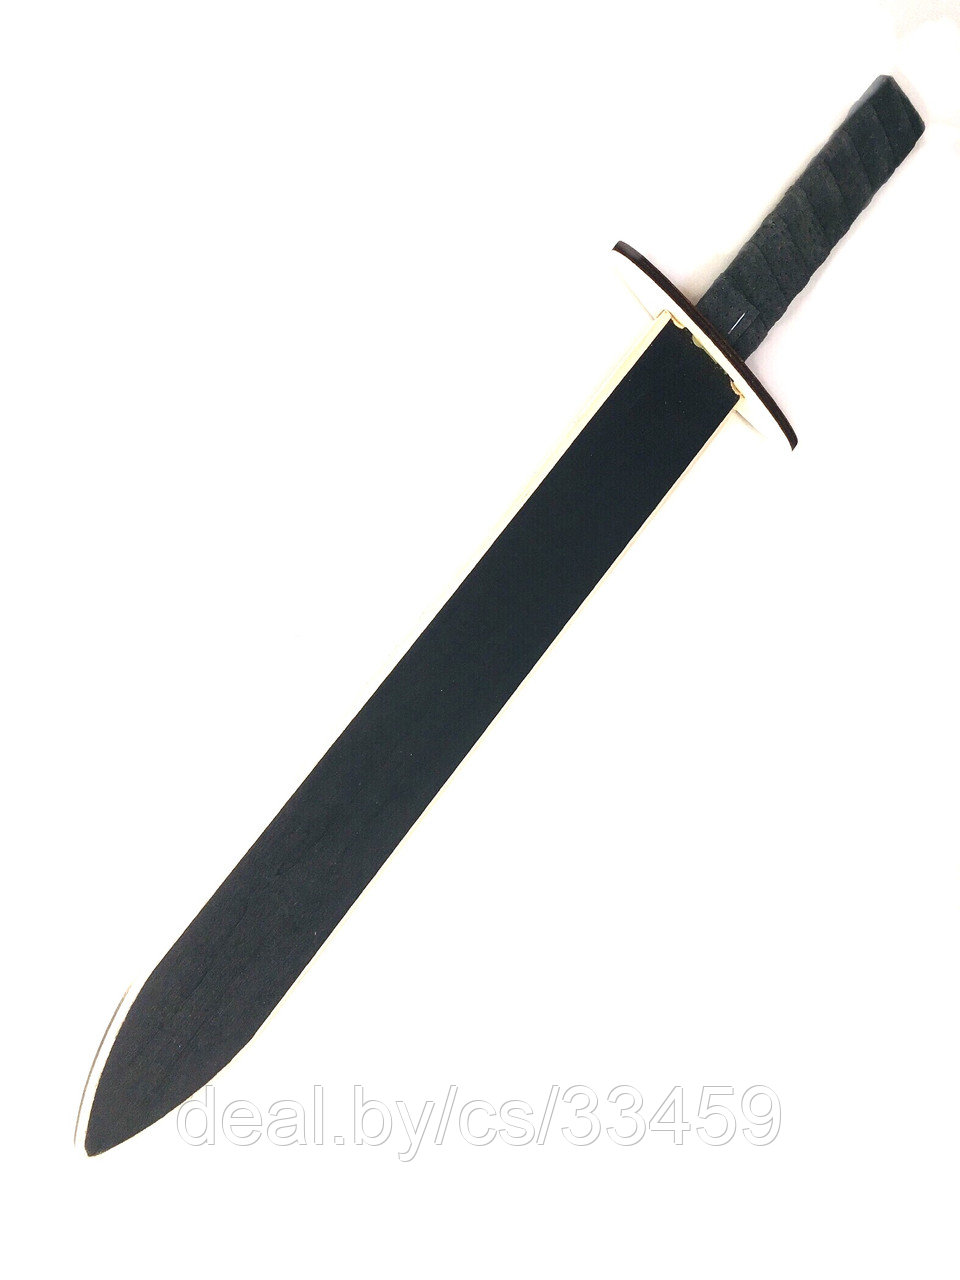 Сувенирный деревянный меч, ручная работа(Беларусь), фото 1